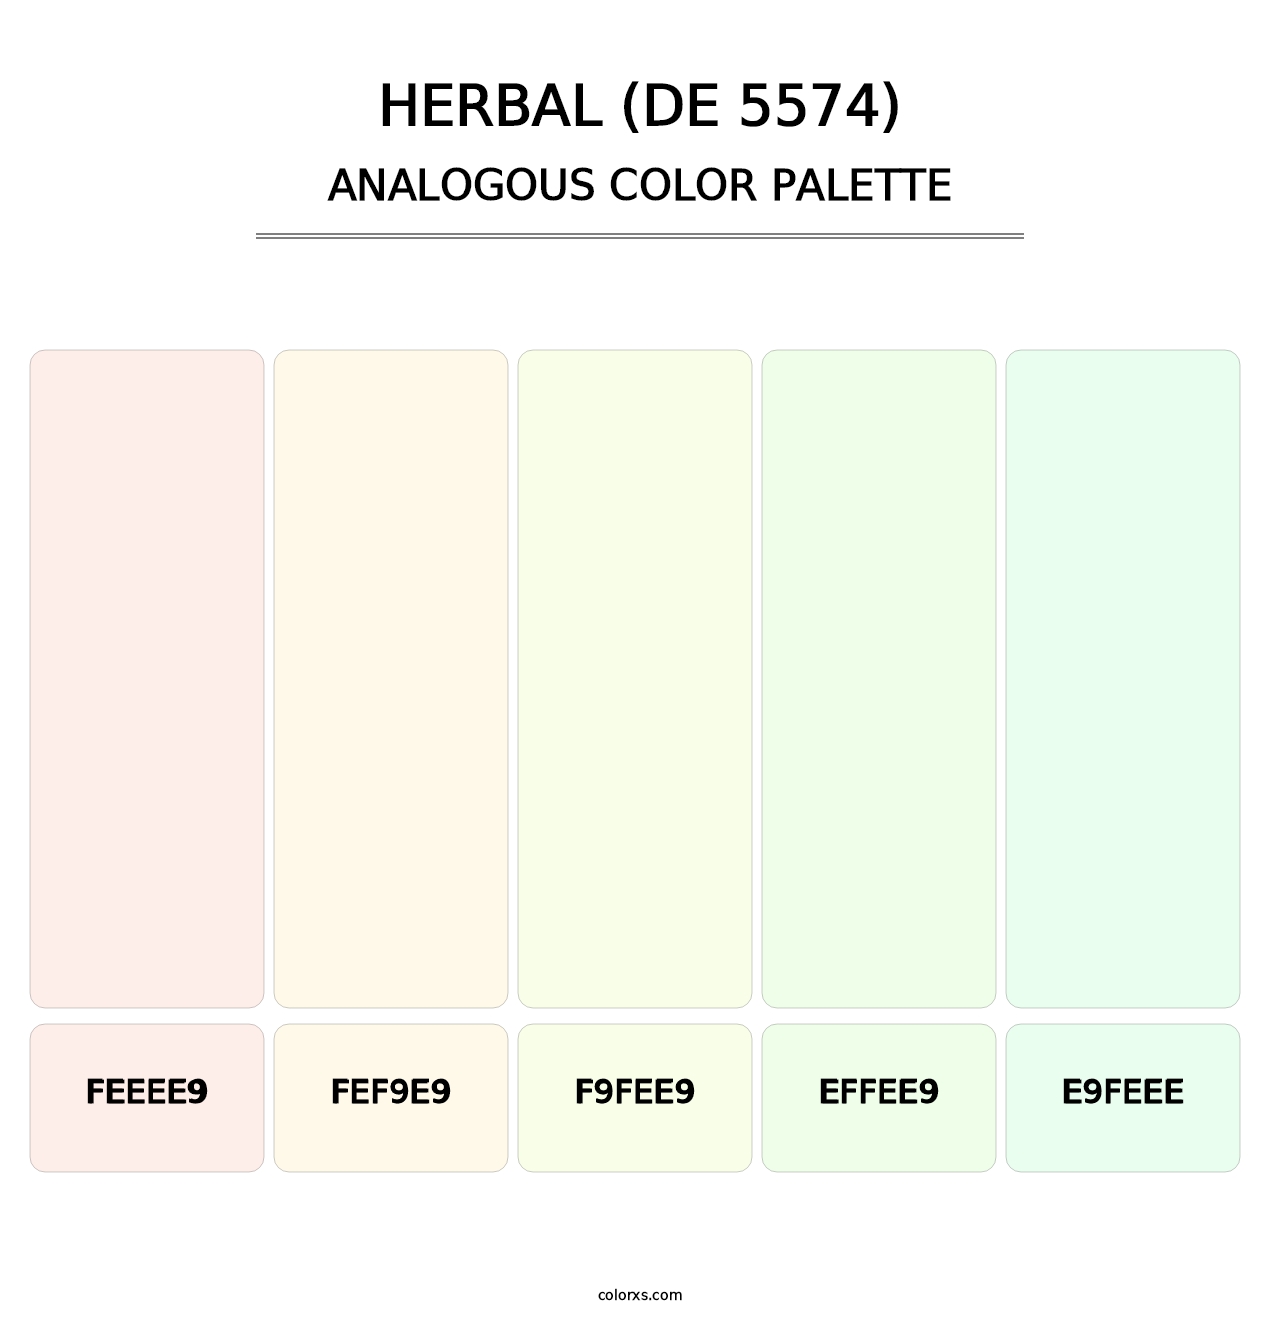 Herbal (DE 5574) - Analogous Color Palette